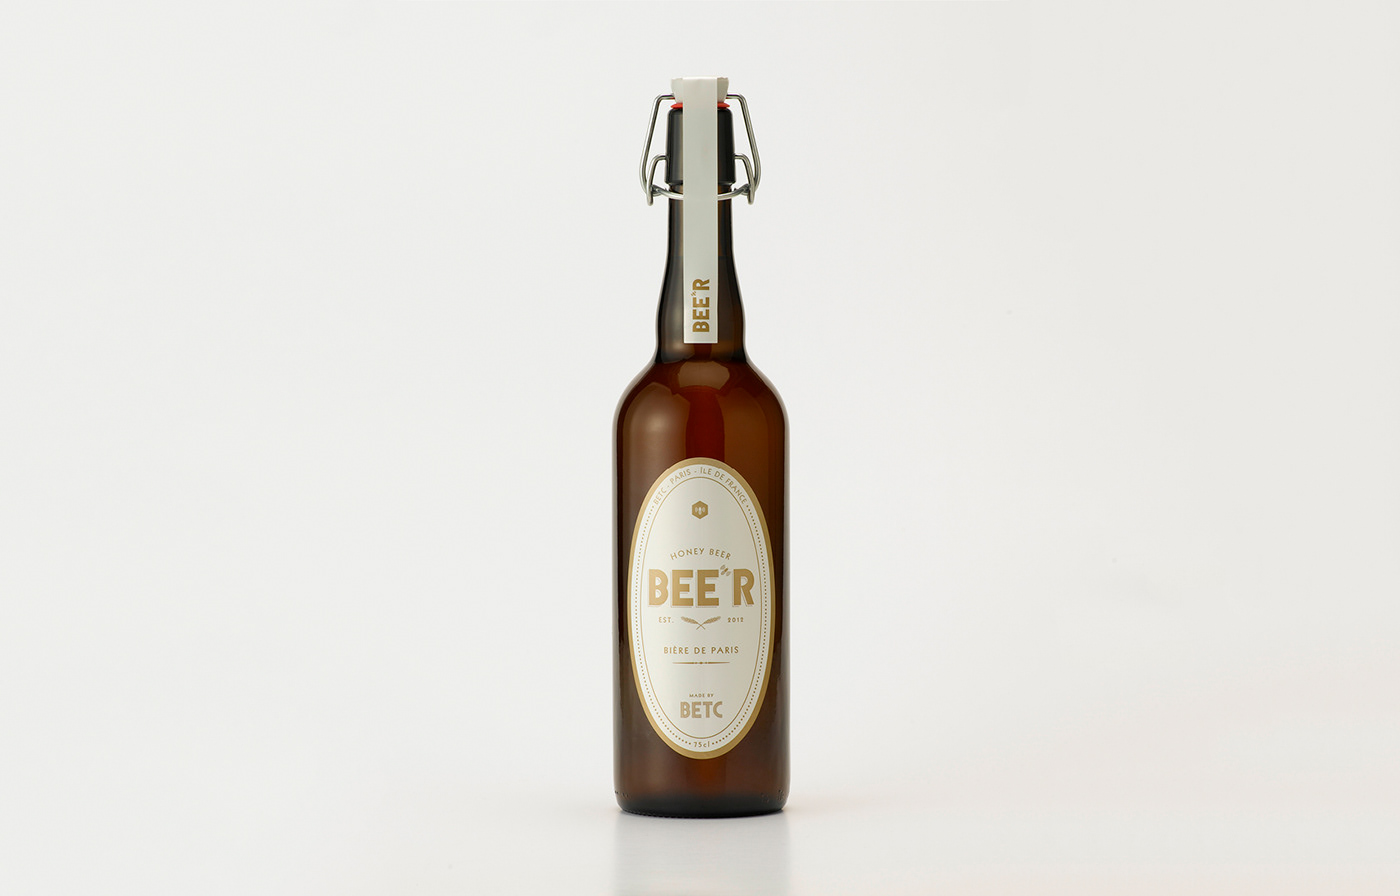 beer bottle honey bee betc